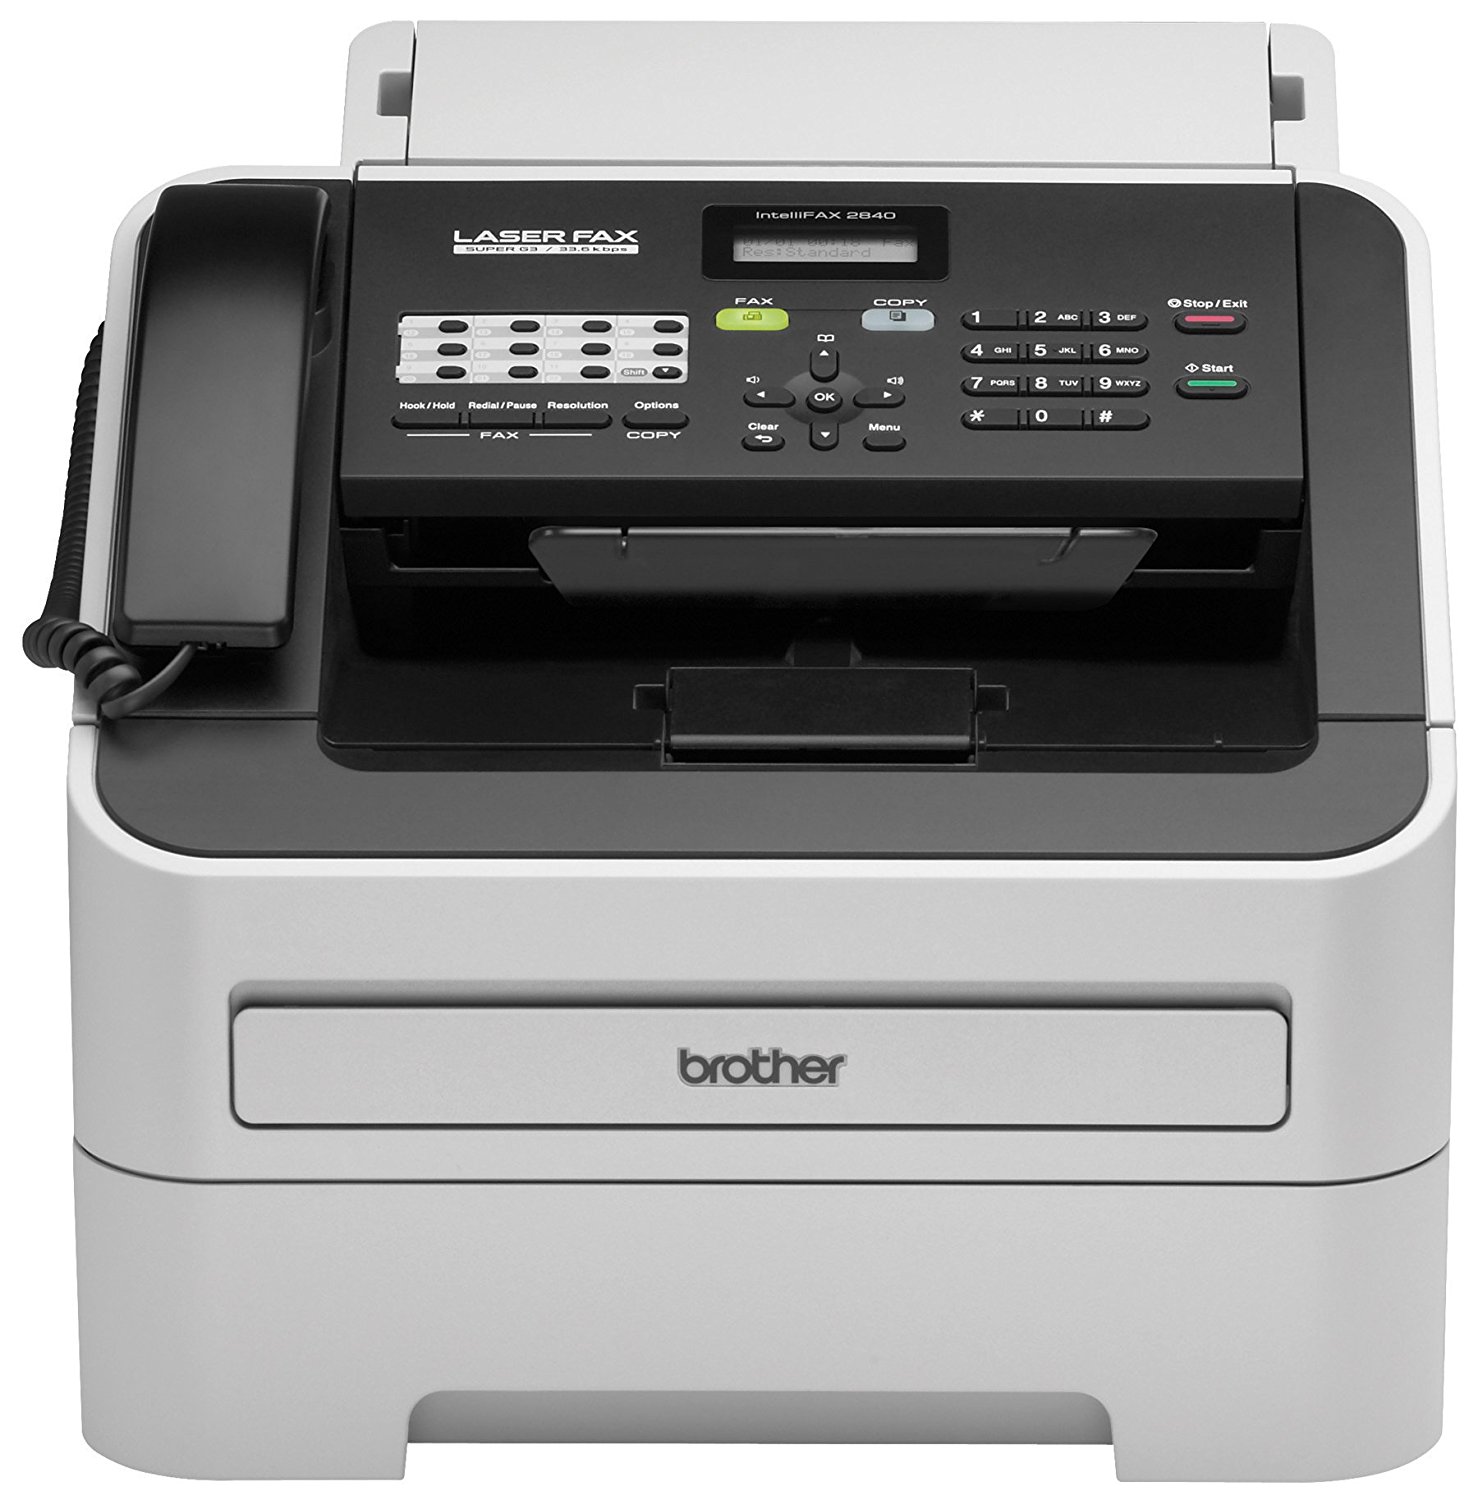 Brother Printer Беспроводной монохромный принтер RFAX2840 со сканером и факсом (после ремонта)